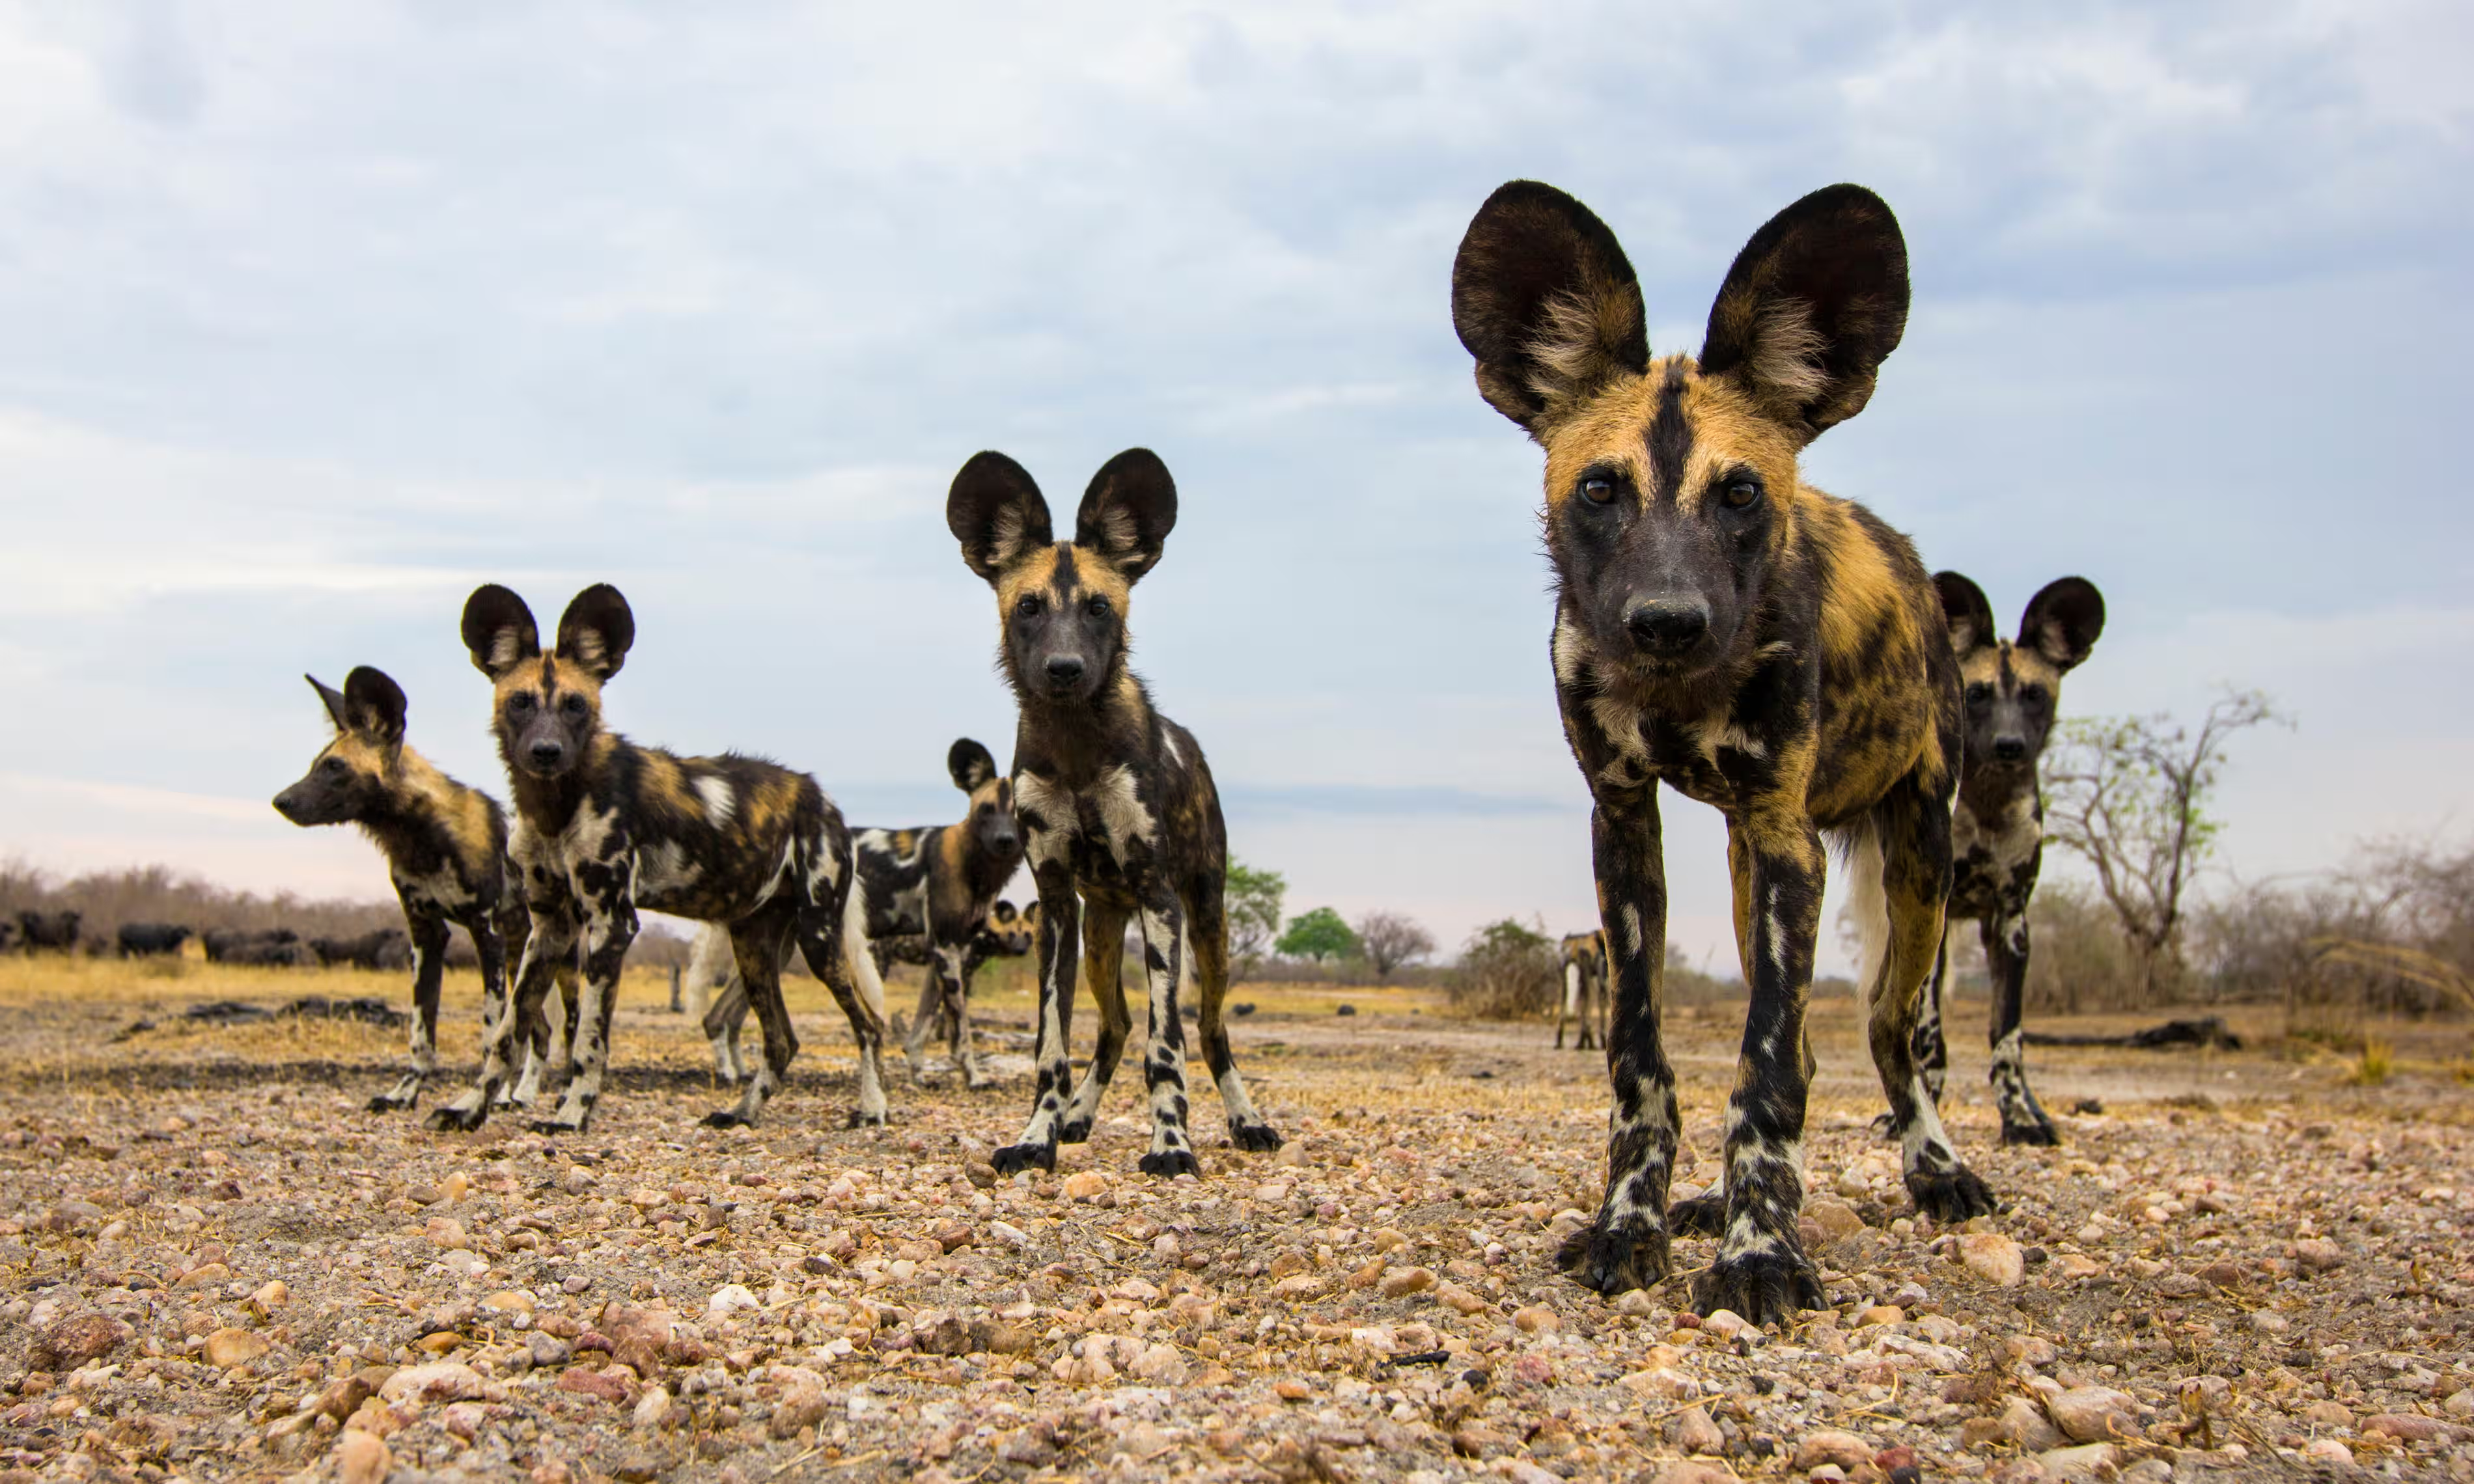 Зникаючі африканські дикі собаки в національному парку Південна Луангва, Замбія. Вид перебуває під загрозою через фрагментацію ареалу. Фотографія: Nature Picture Library/Alamy